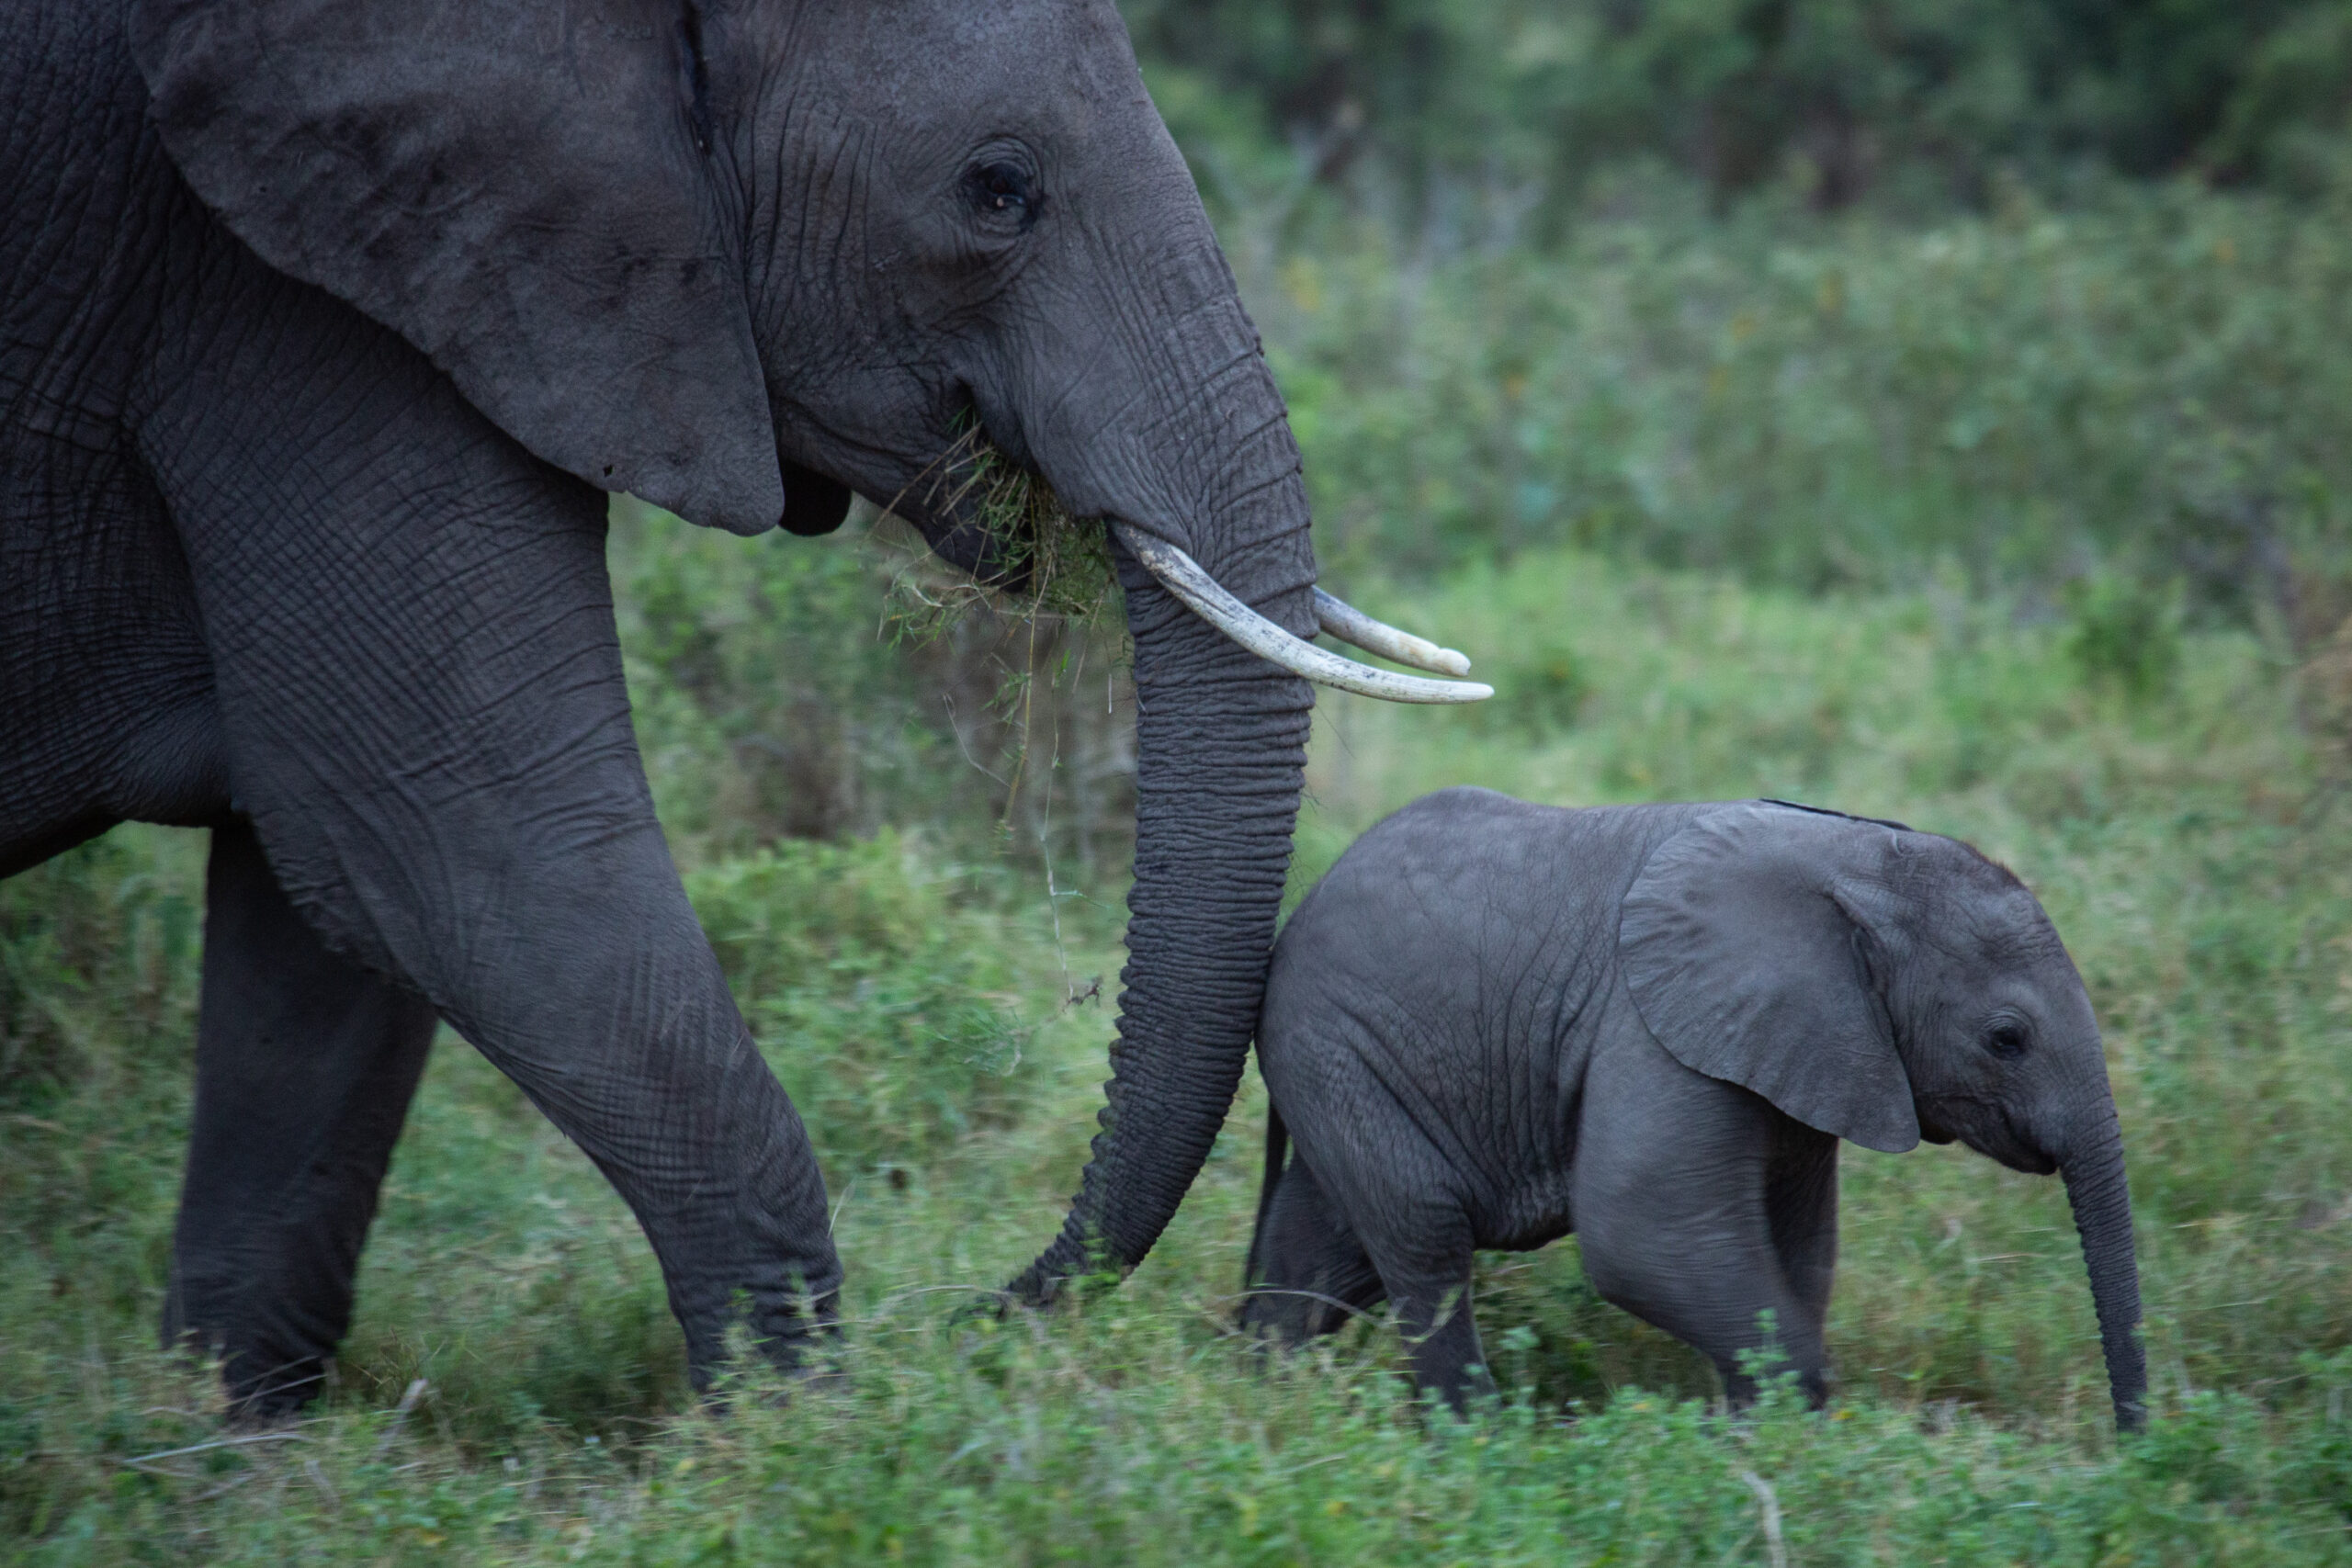 An African elephant with a calf on the savanna